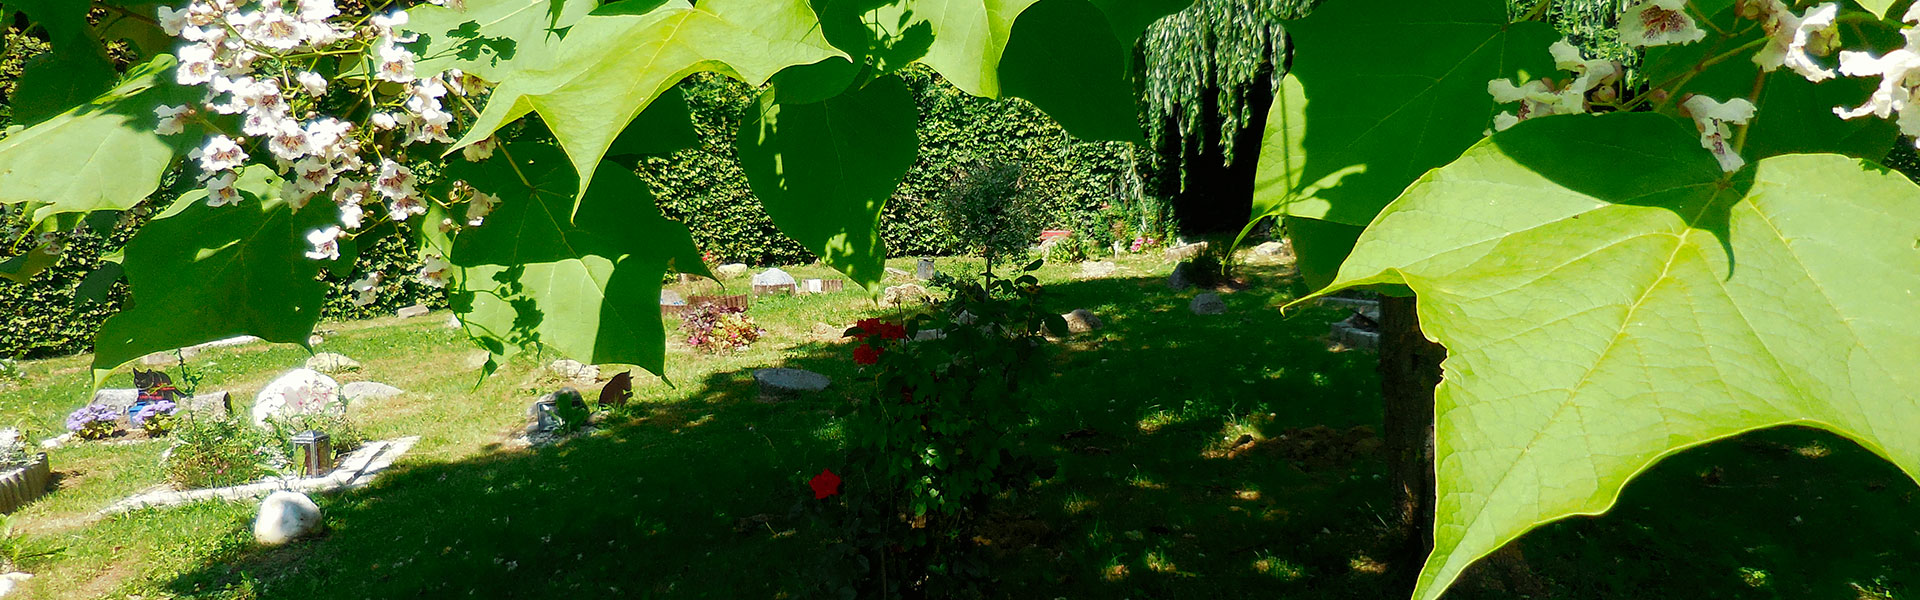 Bestattung für Tiere am ruhigen Waldfriedhof